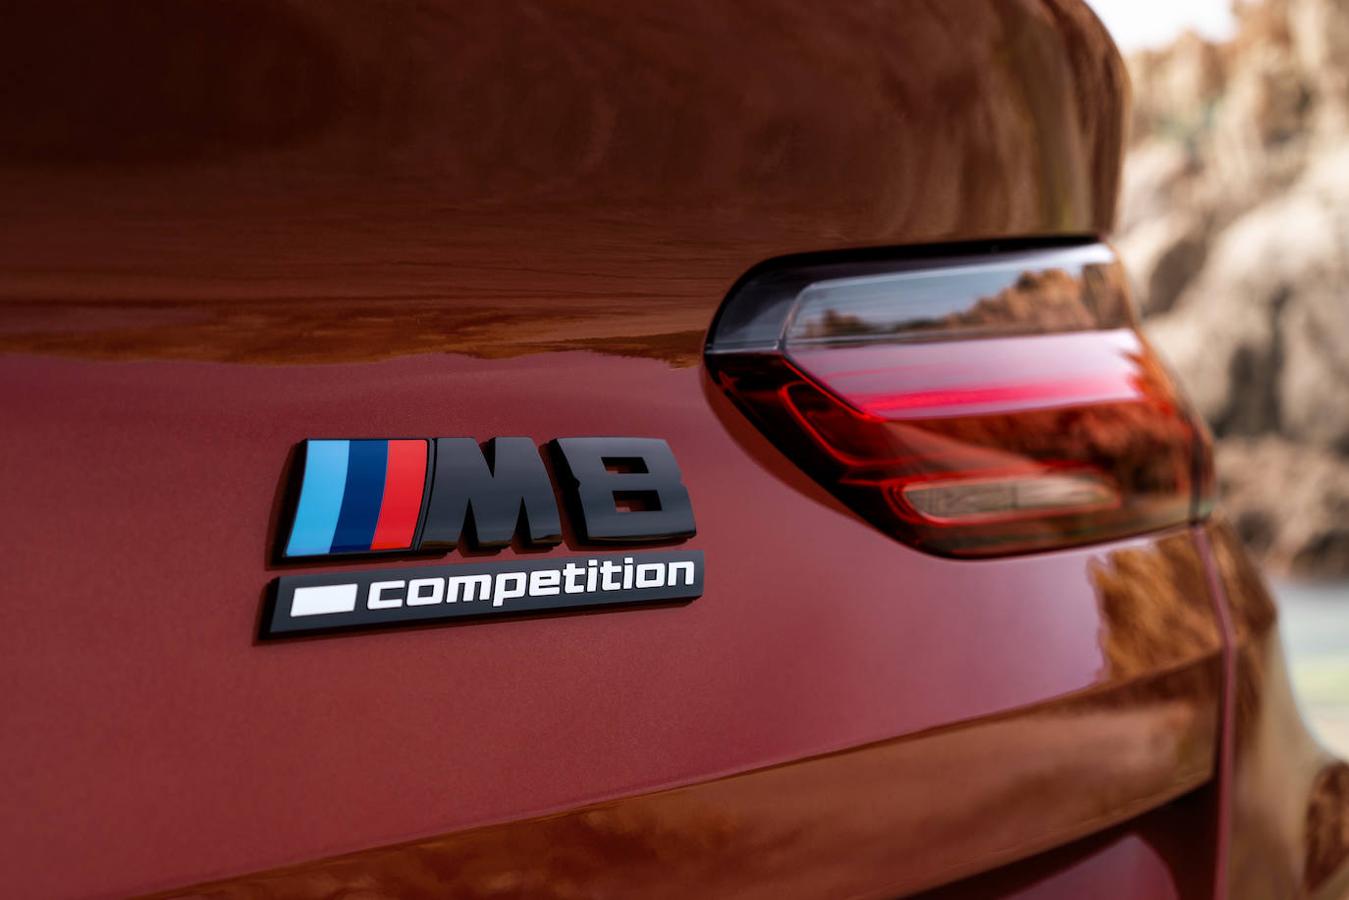 El nuevo BMW M8 Competition Cabrio y Coupé, en imágenes